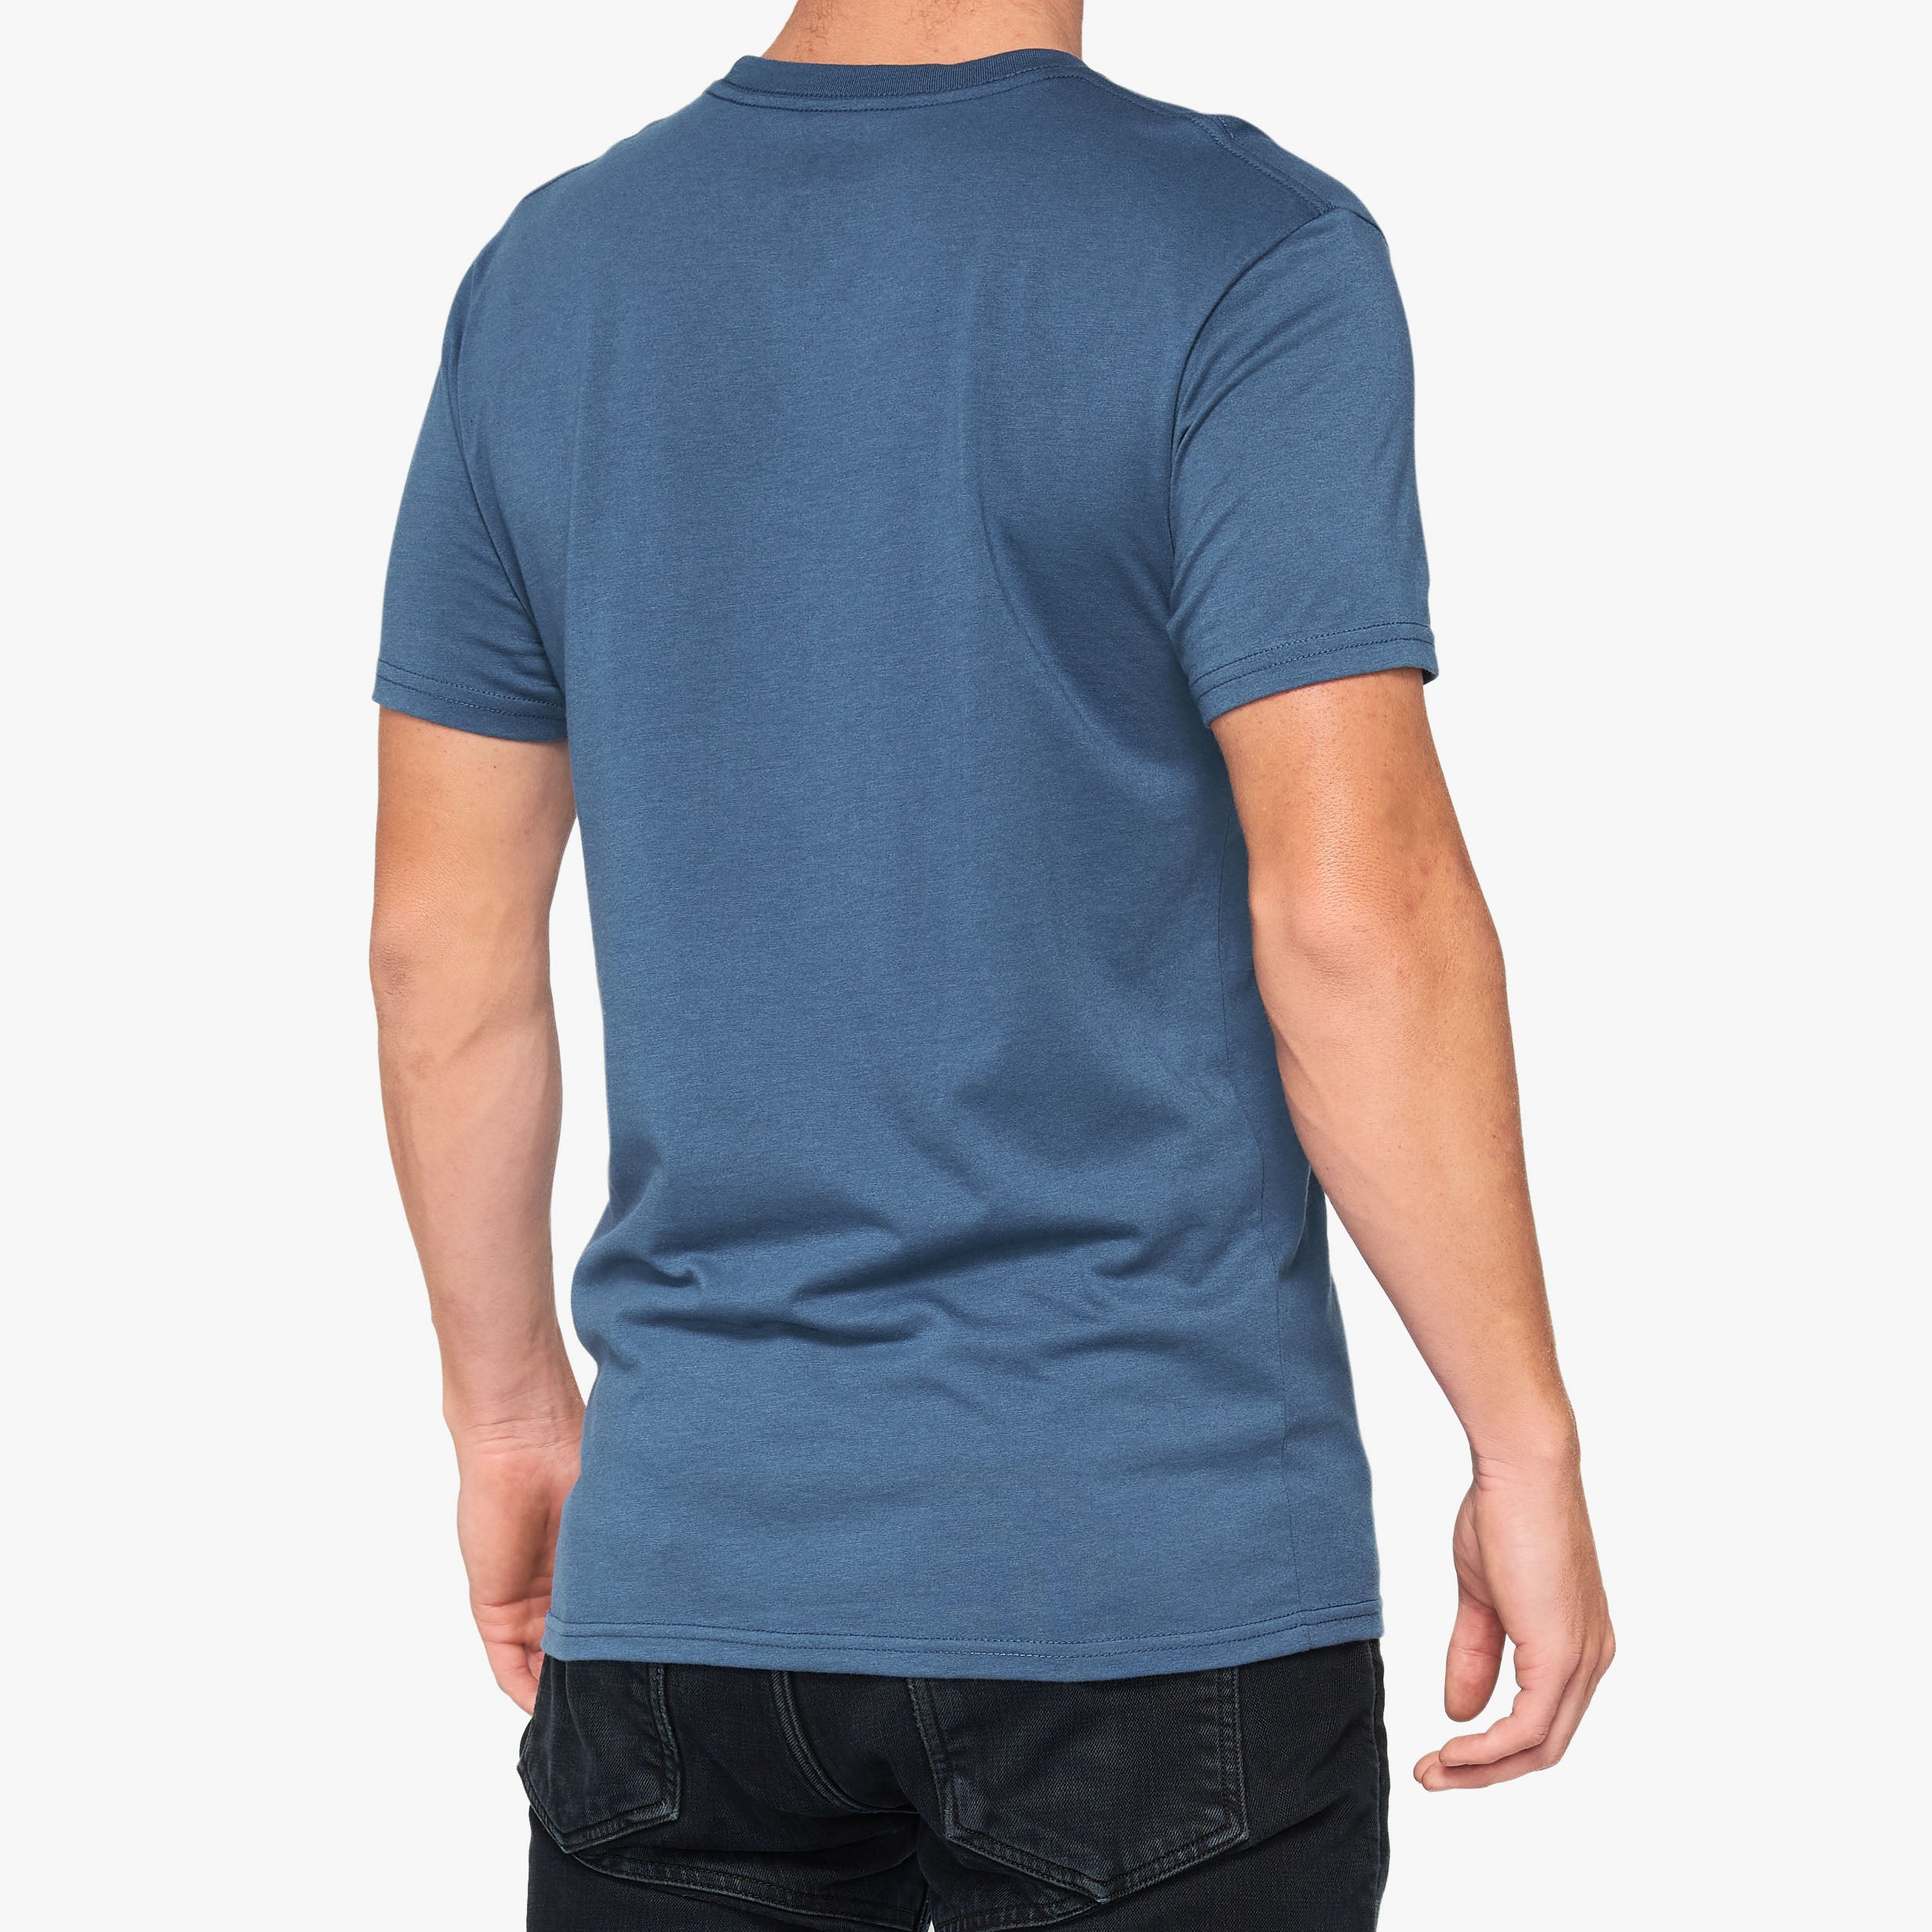 KRAMER T-Shirt Slate - Secondary